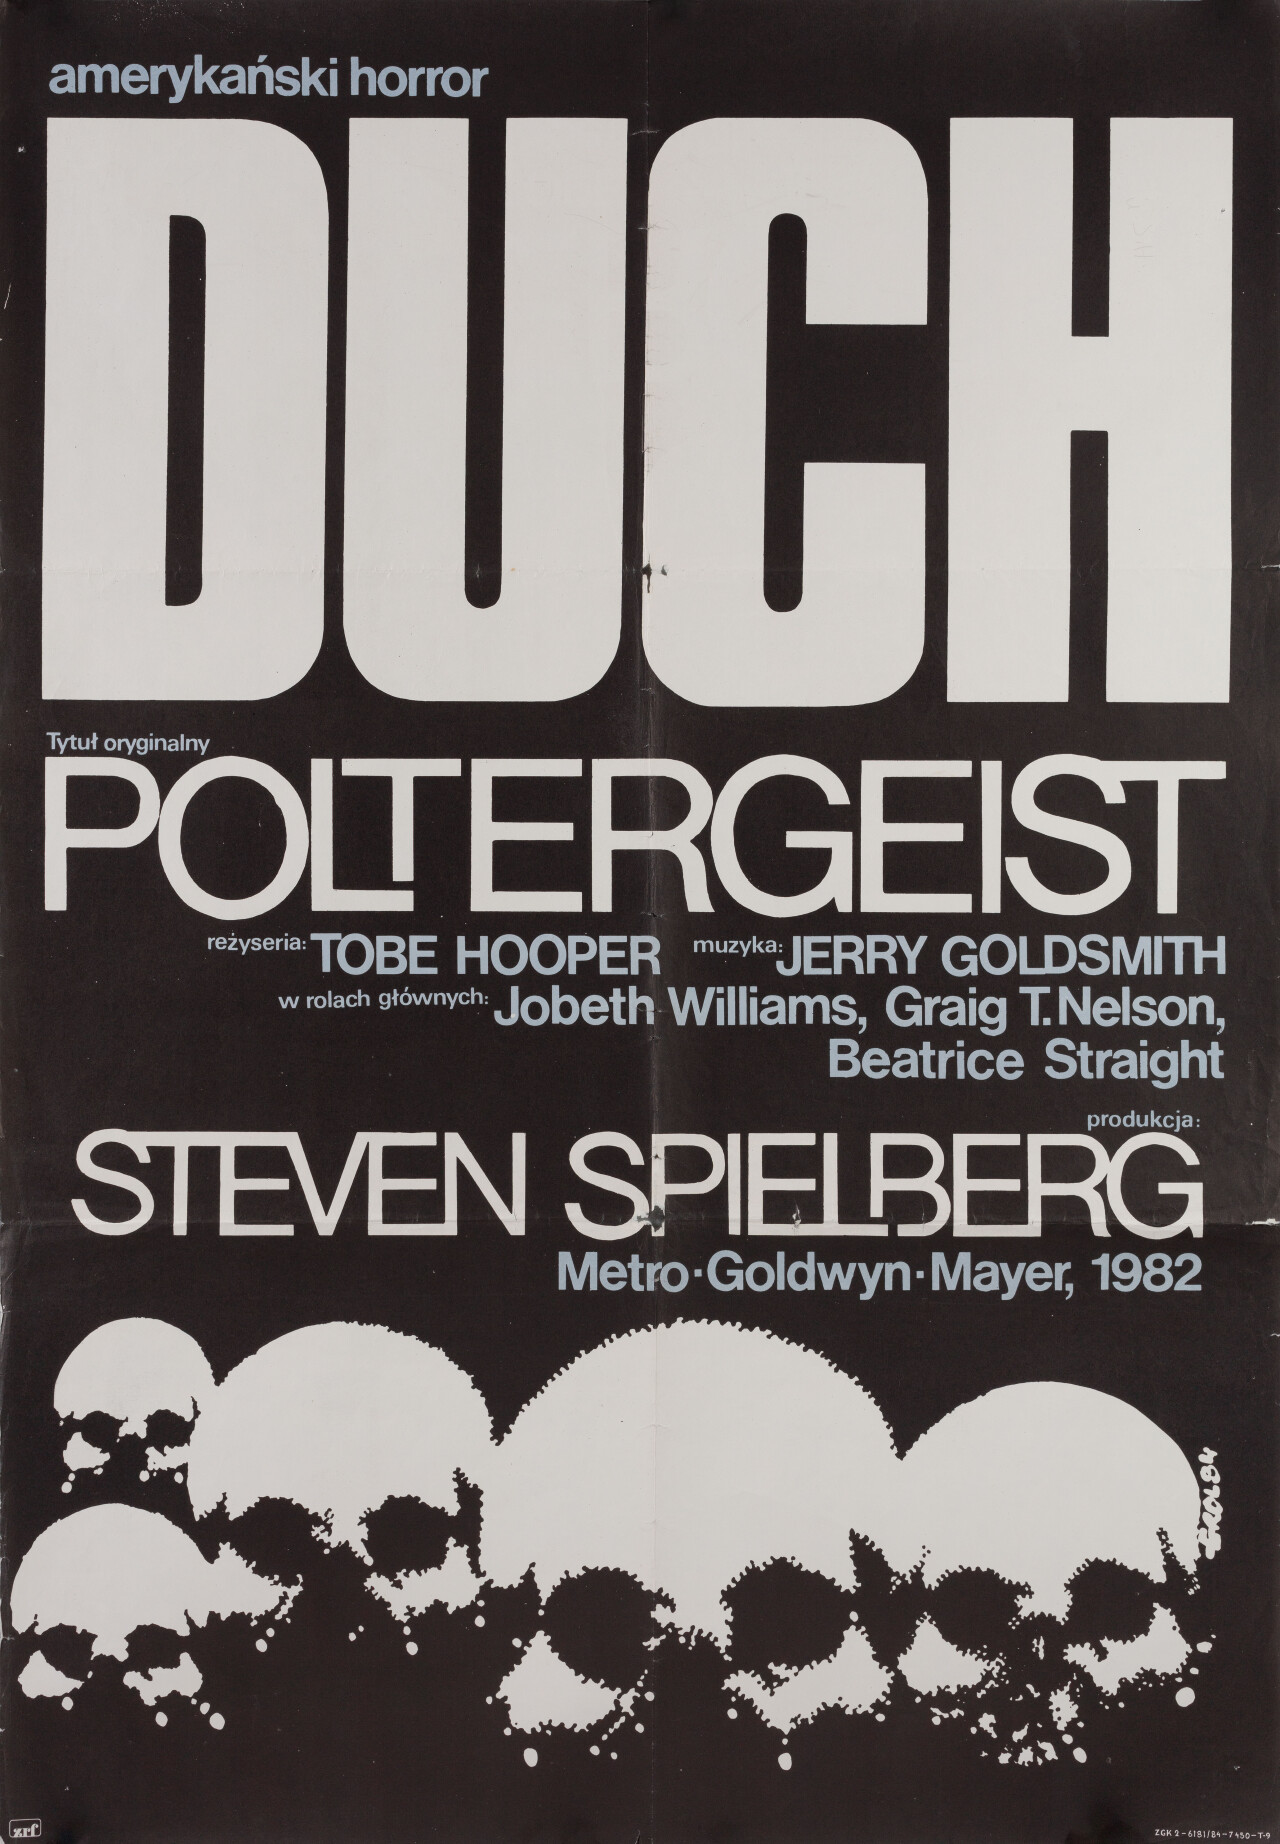 Полтергейст (Poltergeist, 1982), режиссёр Тобе Хупер, польский постер к фильму, автор Якуб Эрол (ужасы, 1984 год)